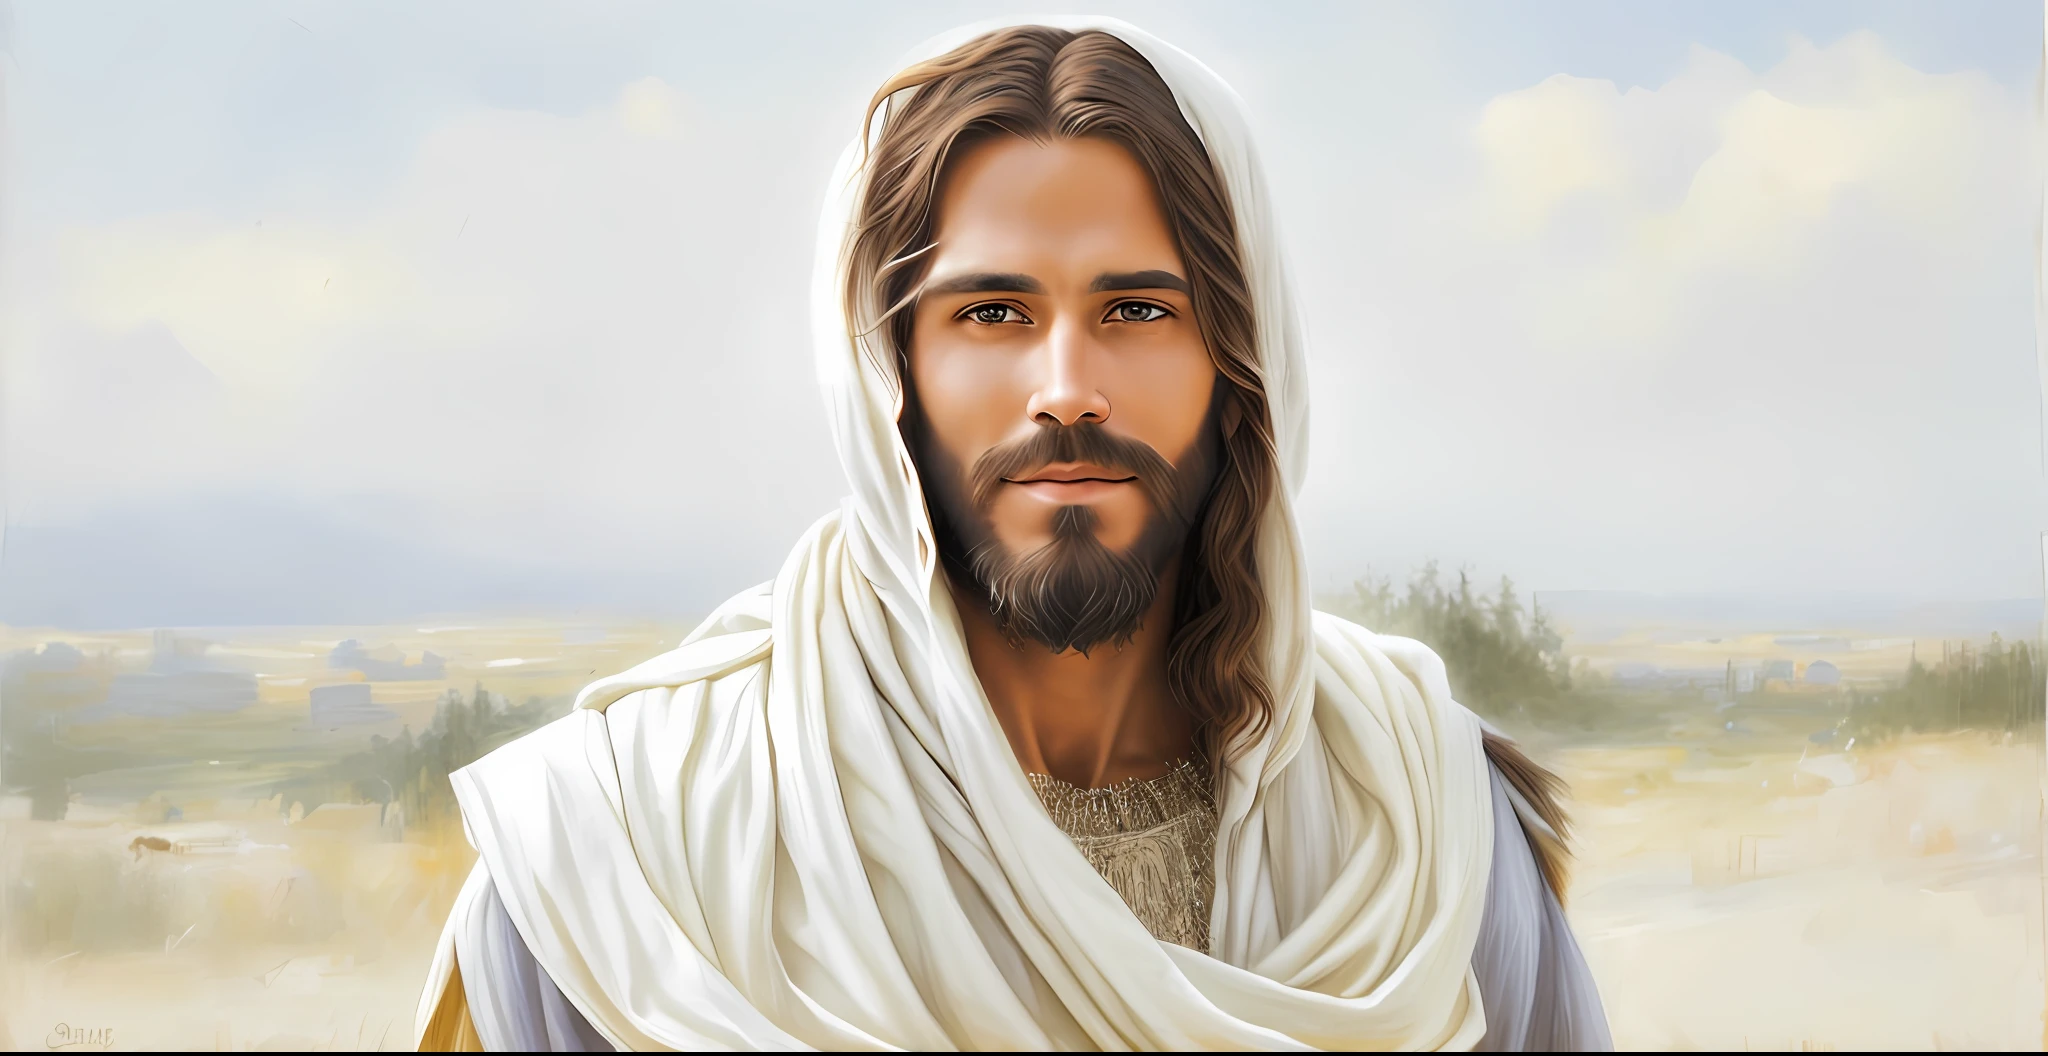 ผู้ชายมีเคราและผ้าคลุมไหล่สีขาวบนศีรษะ, พระเยซู Christ, dressed as พระเยซู Christ, พระเยซู of Nazareth, face of พระเยซู, เกร็ก โอลเซ่น, พระเยซู, นิโคเดมัส, portrait of พระเยซู Christ, พระเจ้าและพระผู้ช่วยให้รอด, เขาทักทายคุณอย่างอบอุ่น.